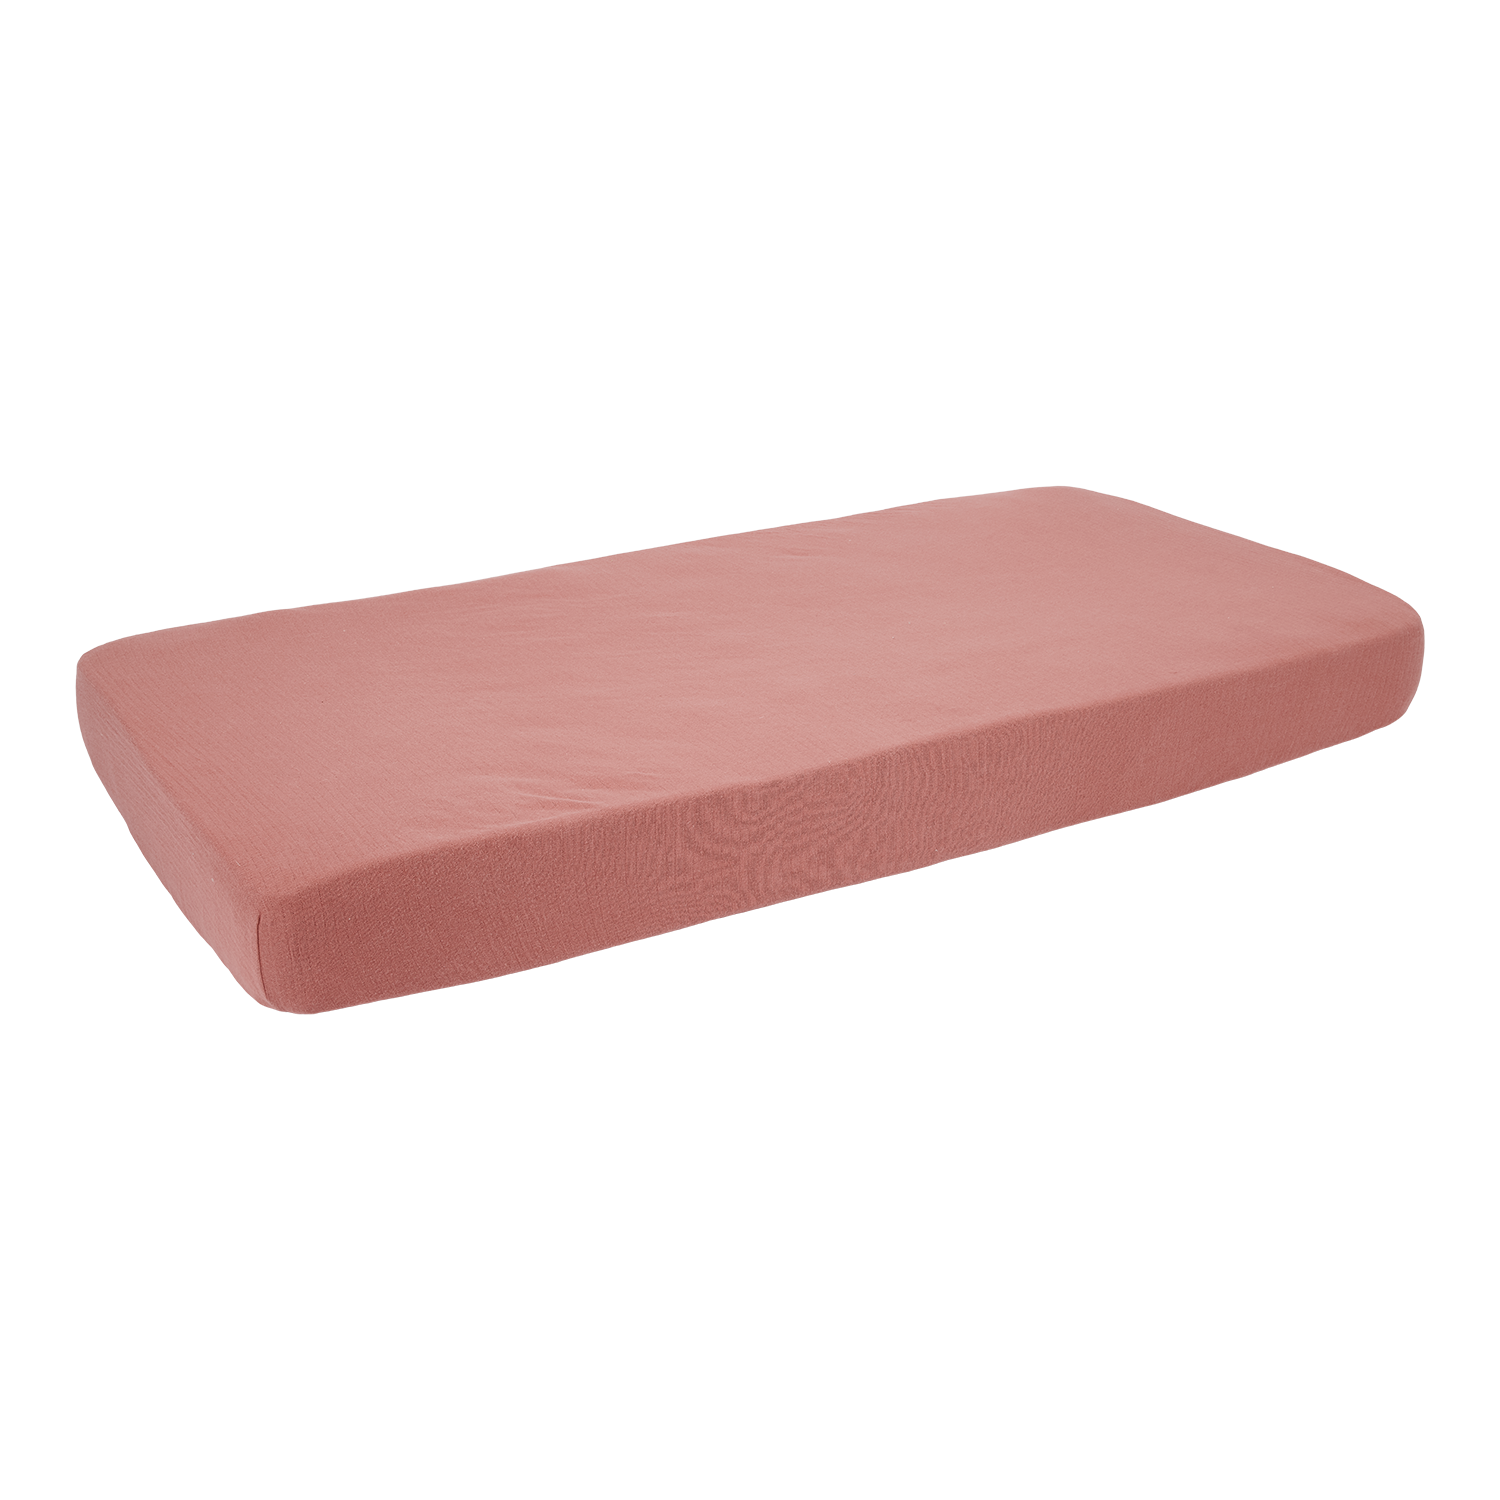 Spannbetttuch für Kinderbett Pure pink blush (70x140 cm)